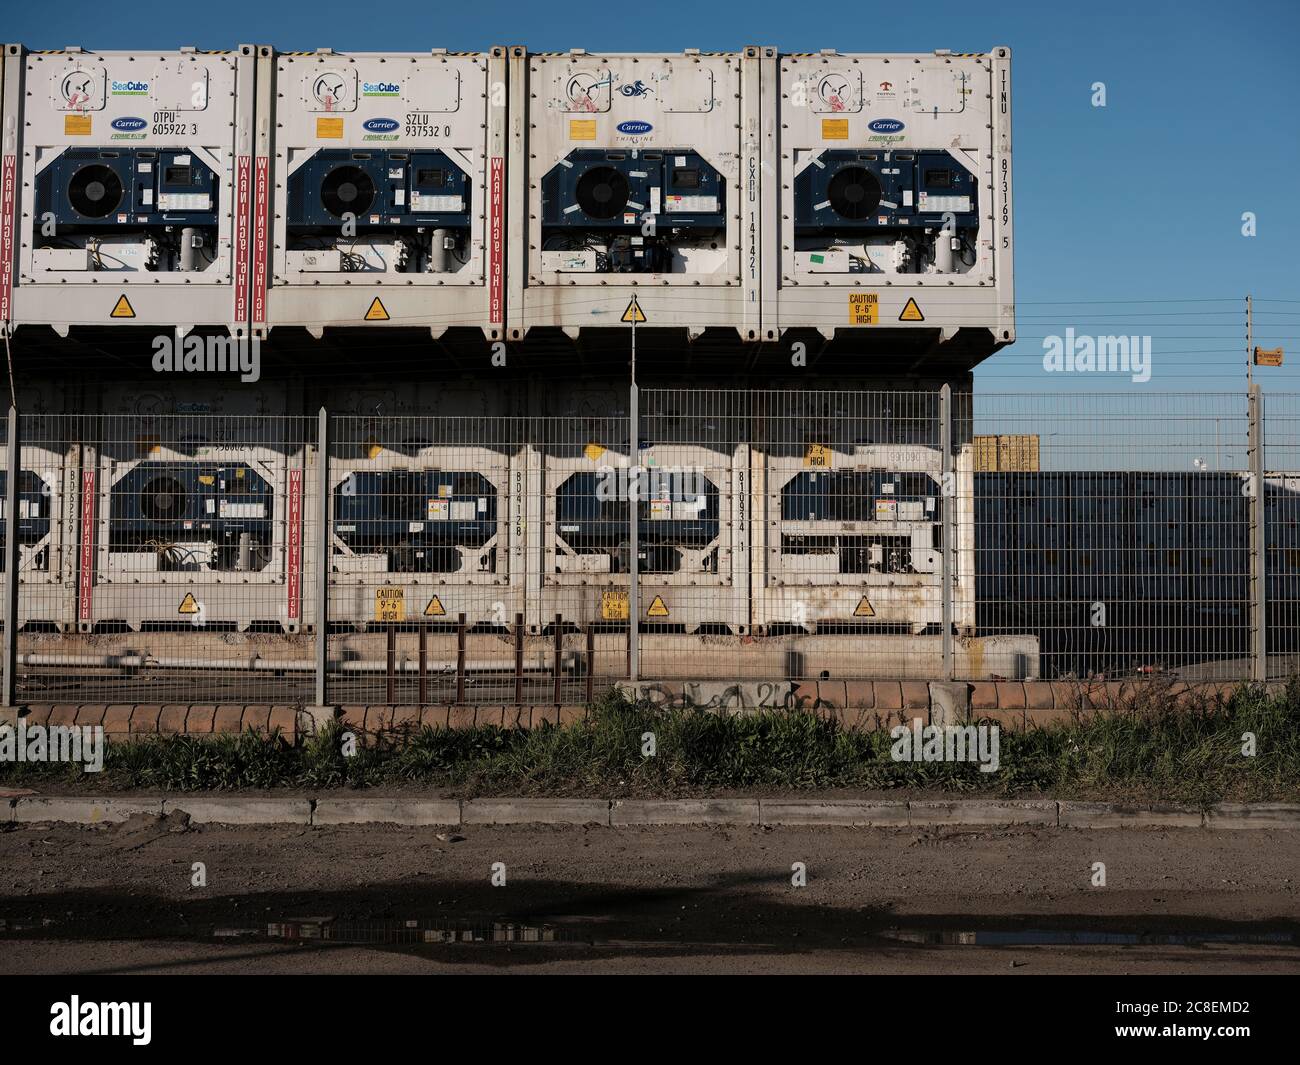 Apilados contenedores refrigerados blancos detrás de una valla eléctrica en una parte industrial de la ciudad. No hay gente. Foto de stock